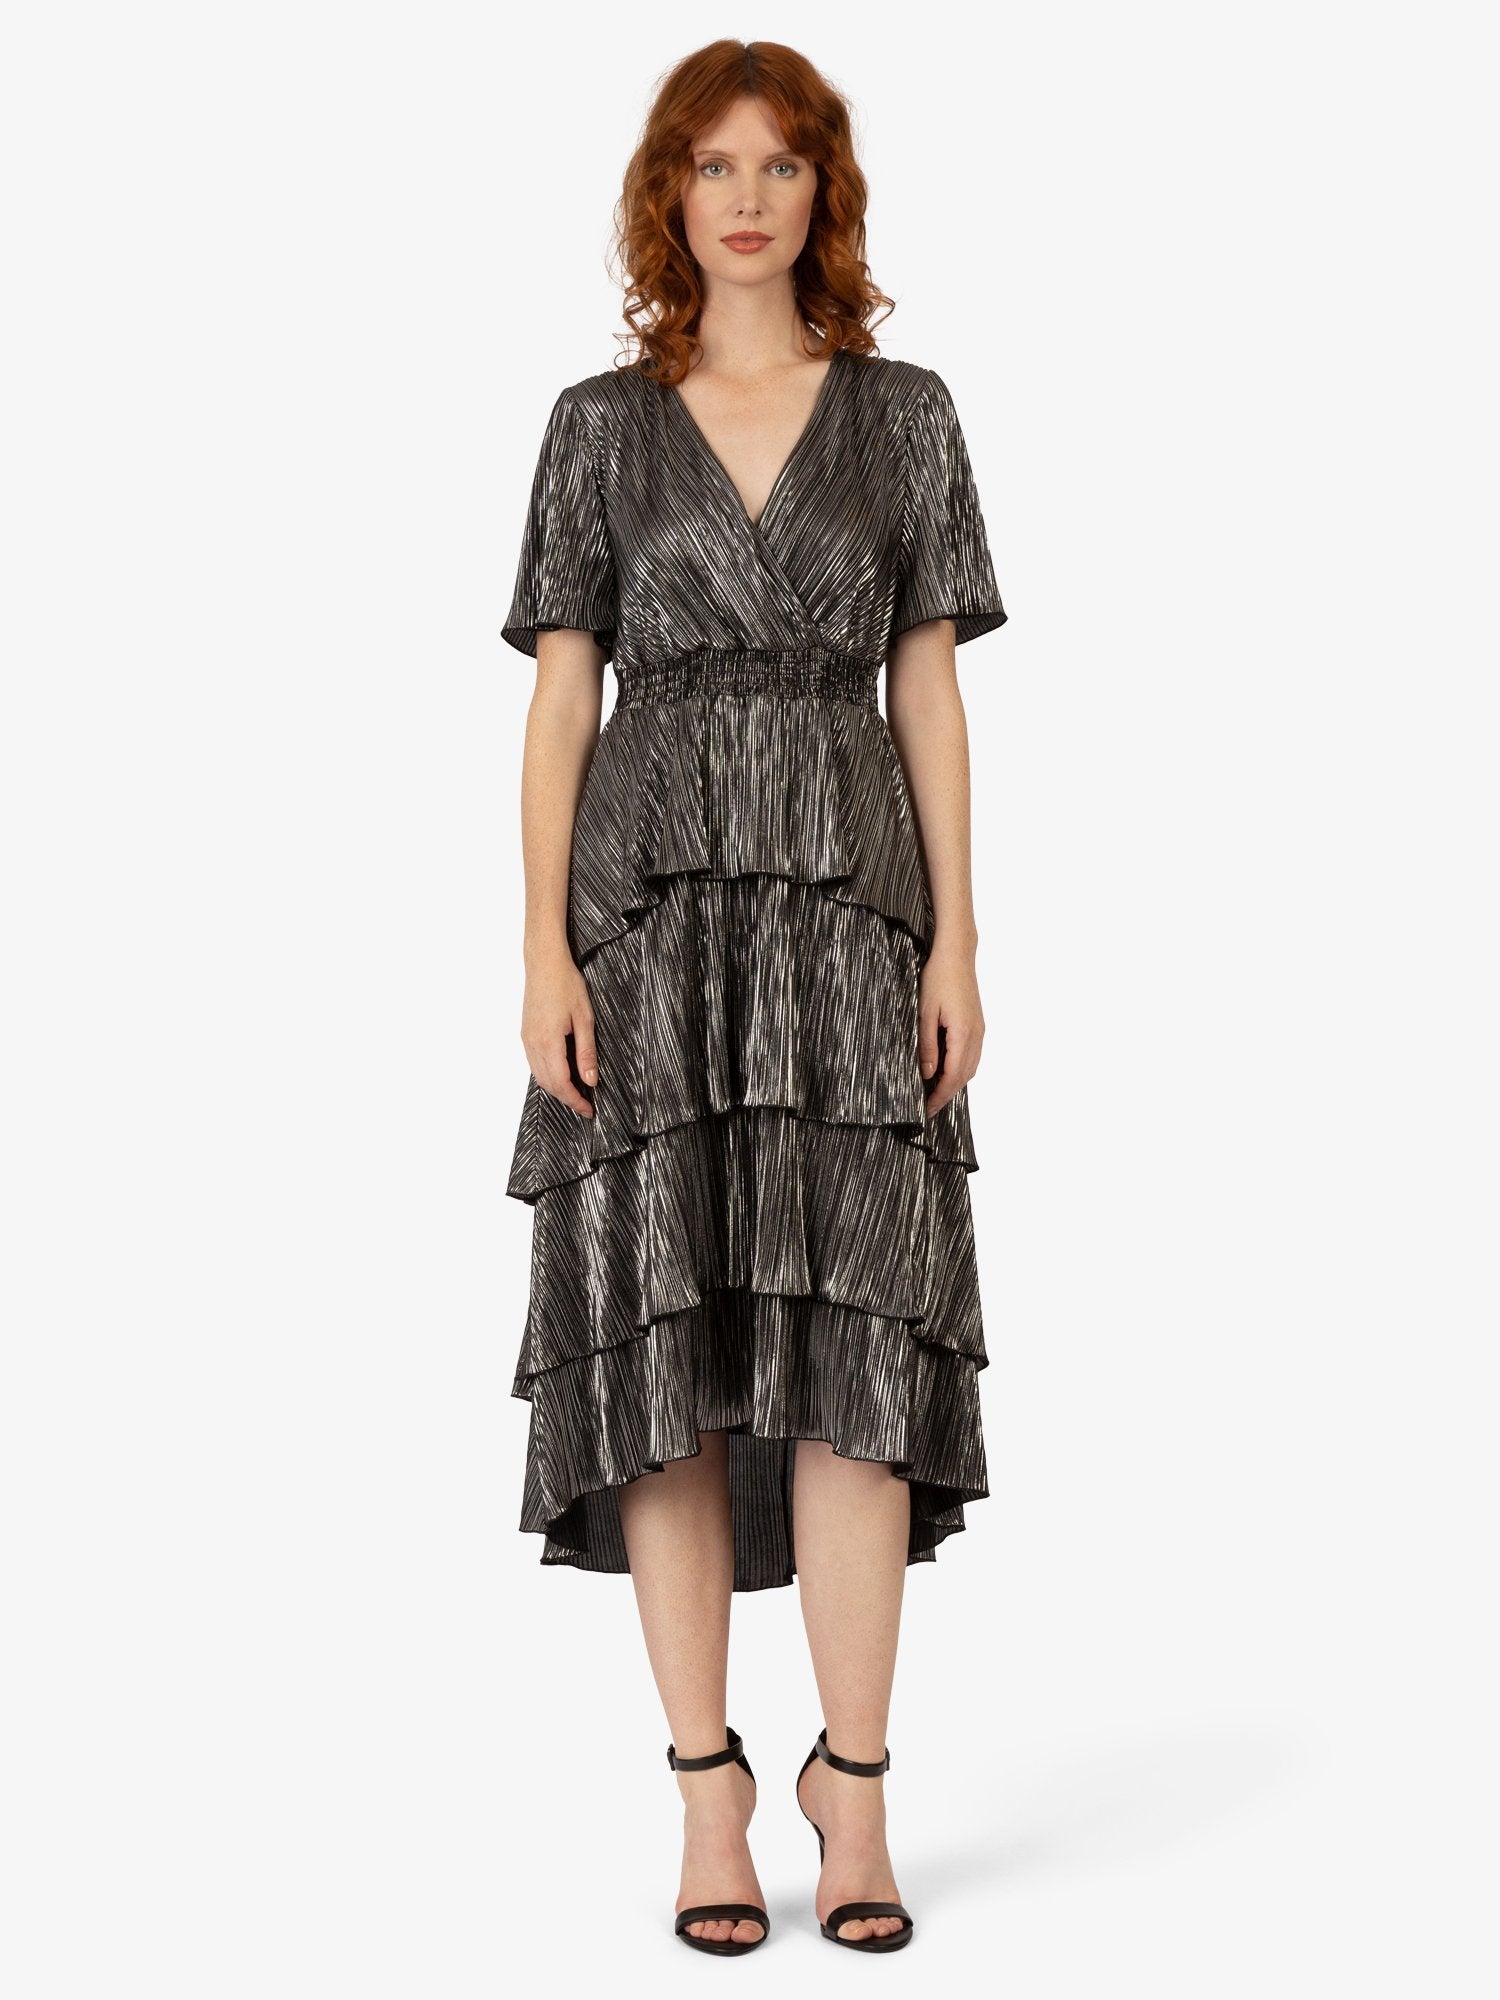 APART Abendkleid aus einer plissierten Jerseyware | silber-schwarz metallic